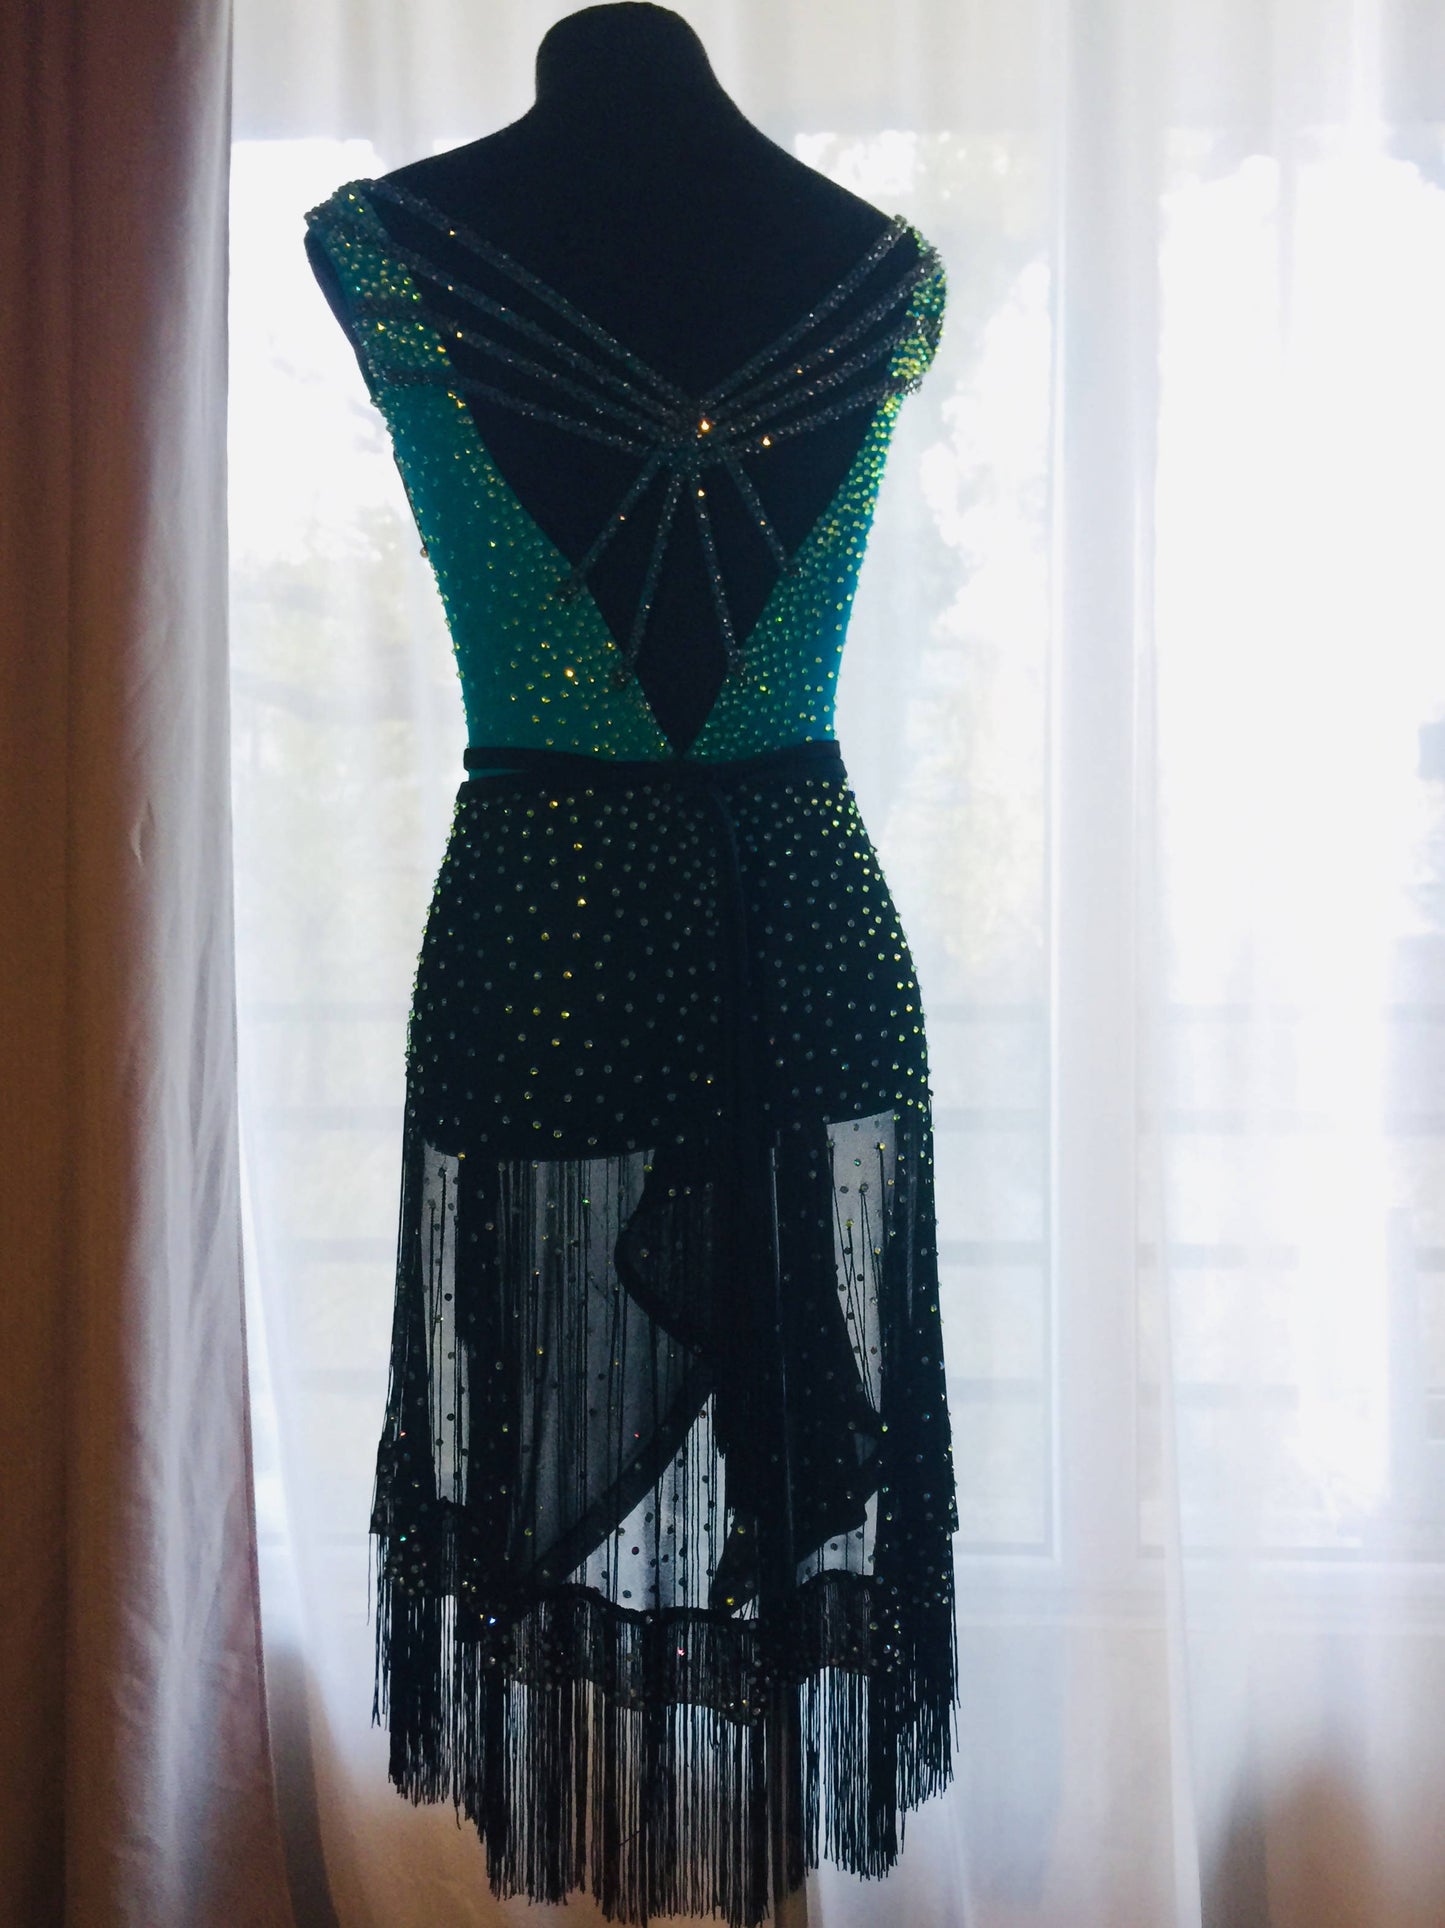 New Full of Stones Blue & Black Latin Dress (ballroom dresses for sale, latin, dancesport, rhythm)